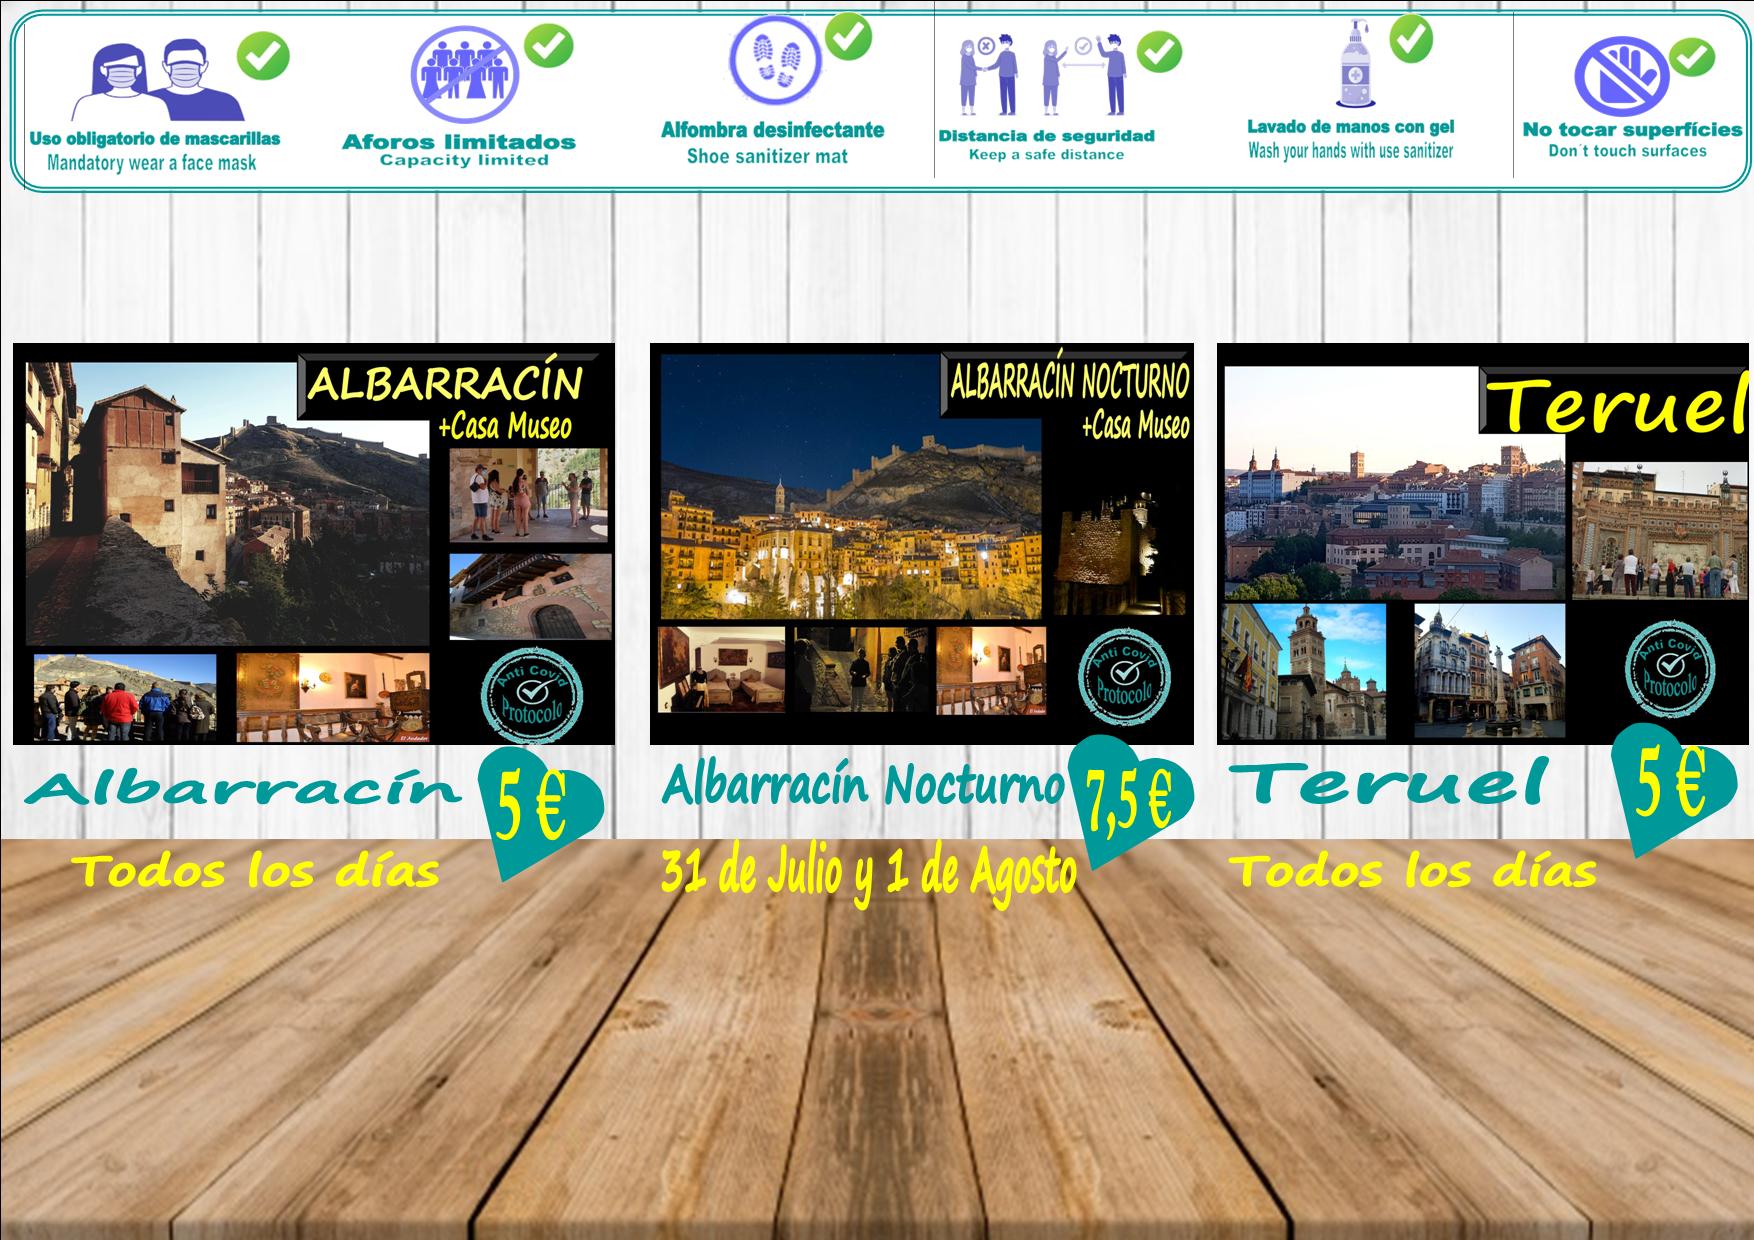 Esta semana…TURISMO RESPONSABLE Y SEGURO: Albarracín y Teruel todos los días y Viernes y Sábado… Albarracín Nocturno + Casa Museo!